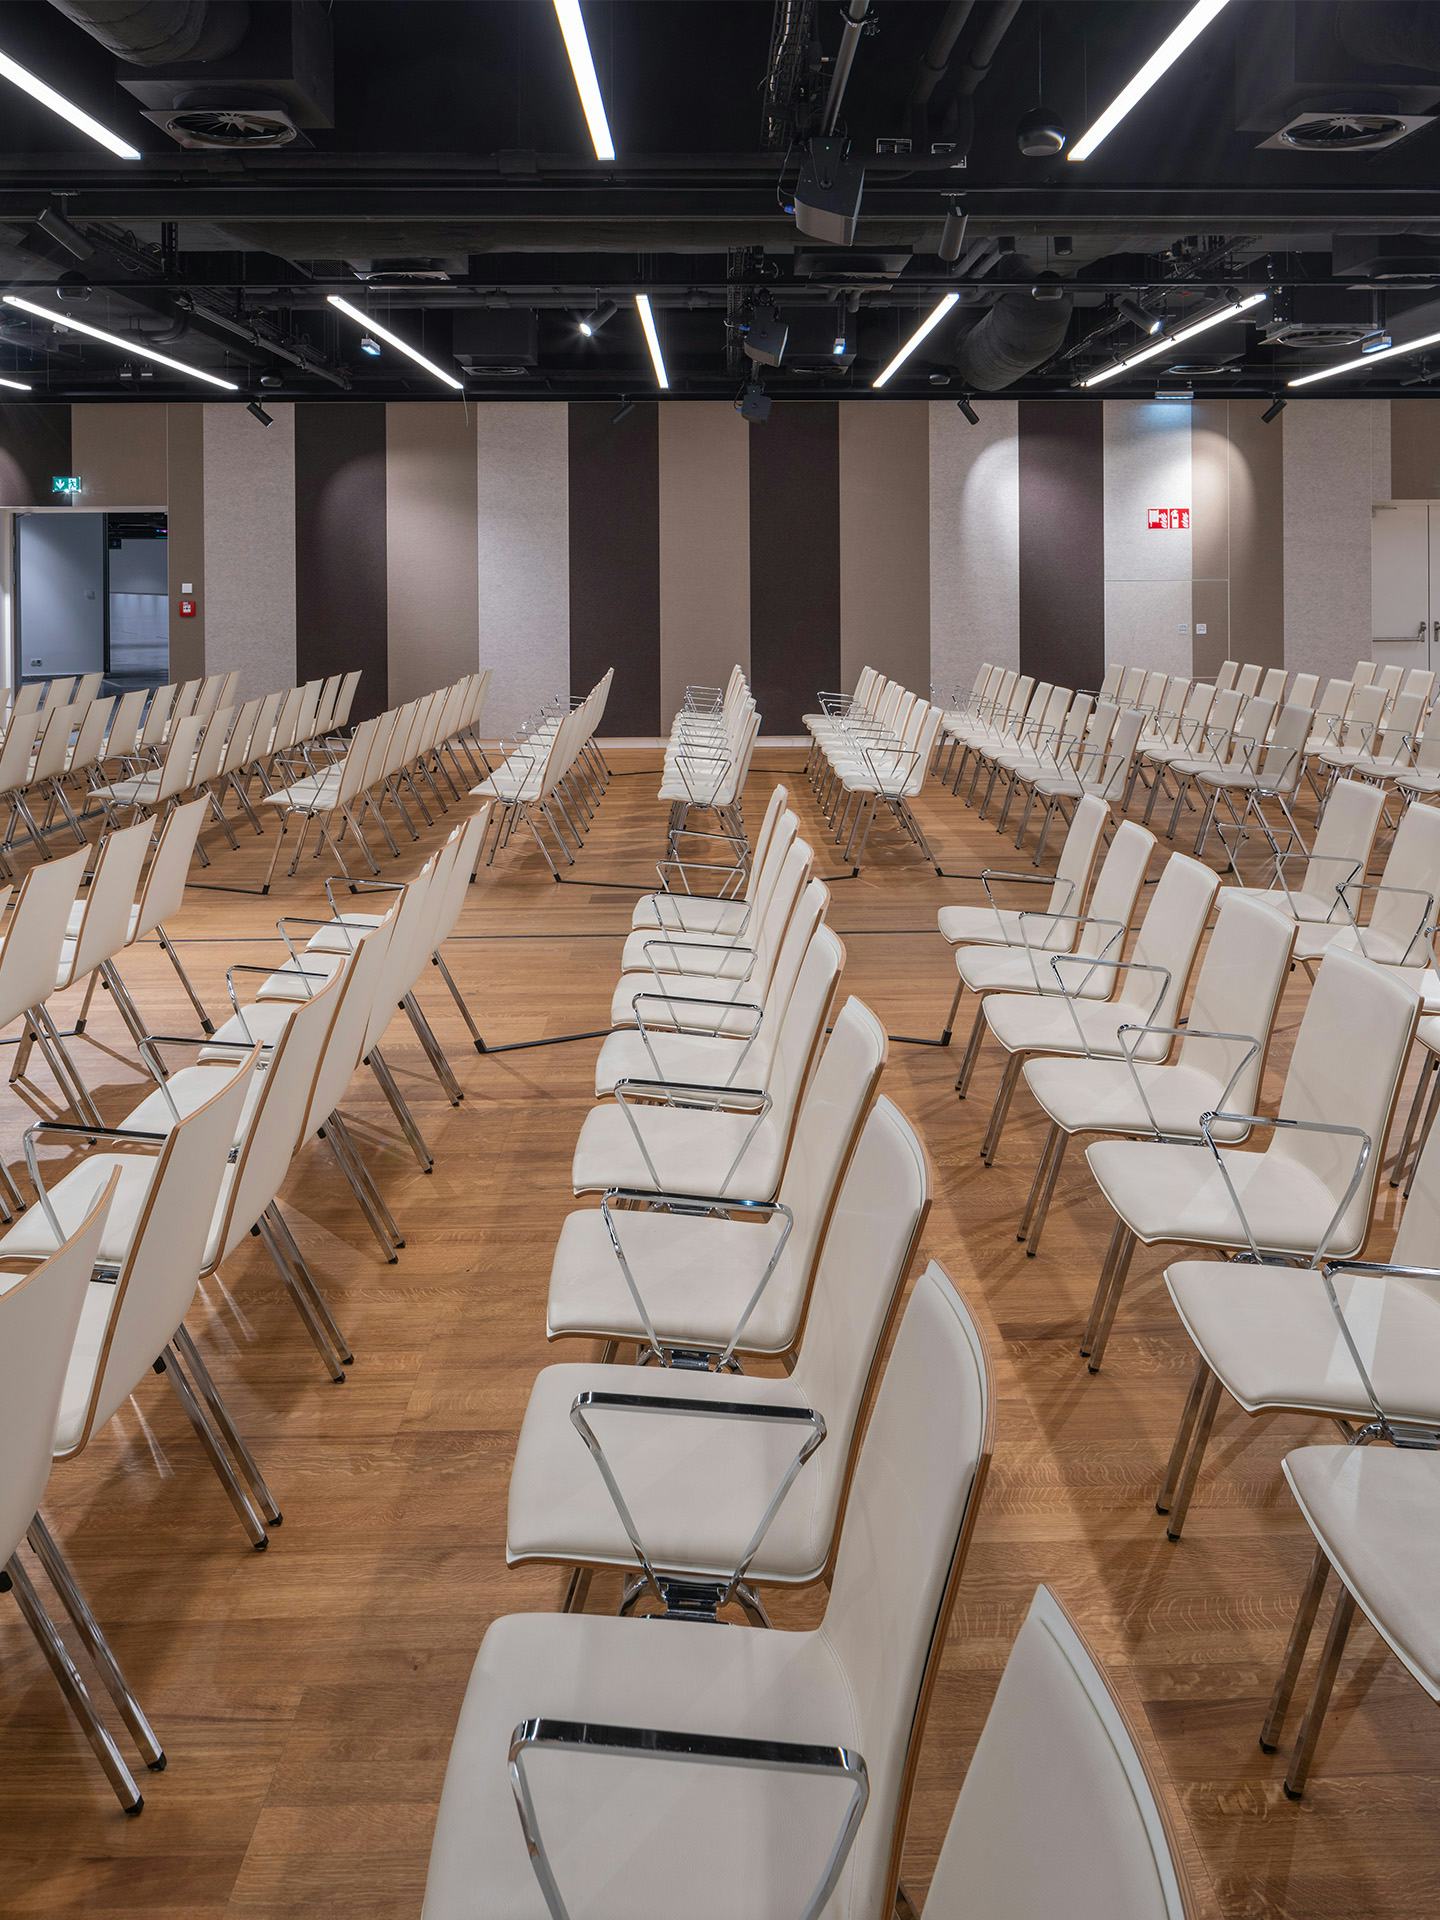 Foto: Sitzreihen in einem Saal mit Holzboden, gestreifte Tapete